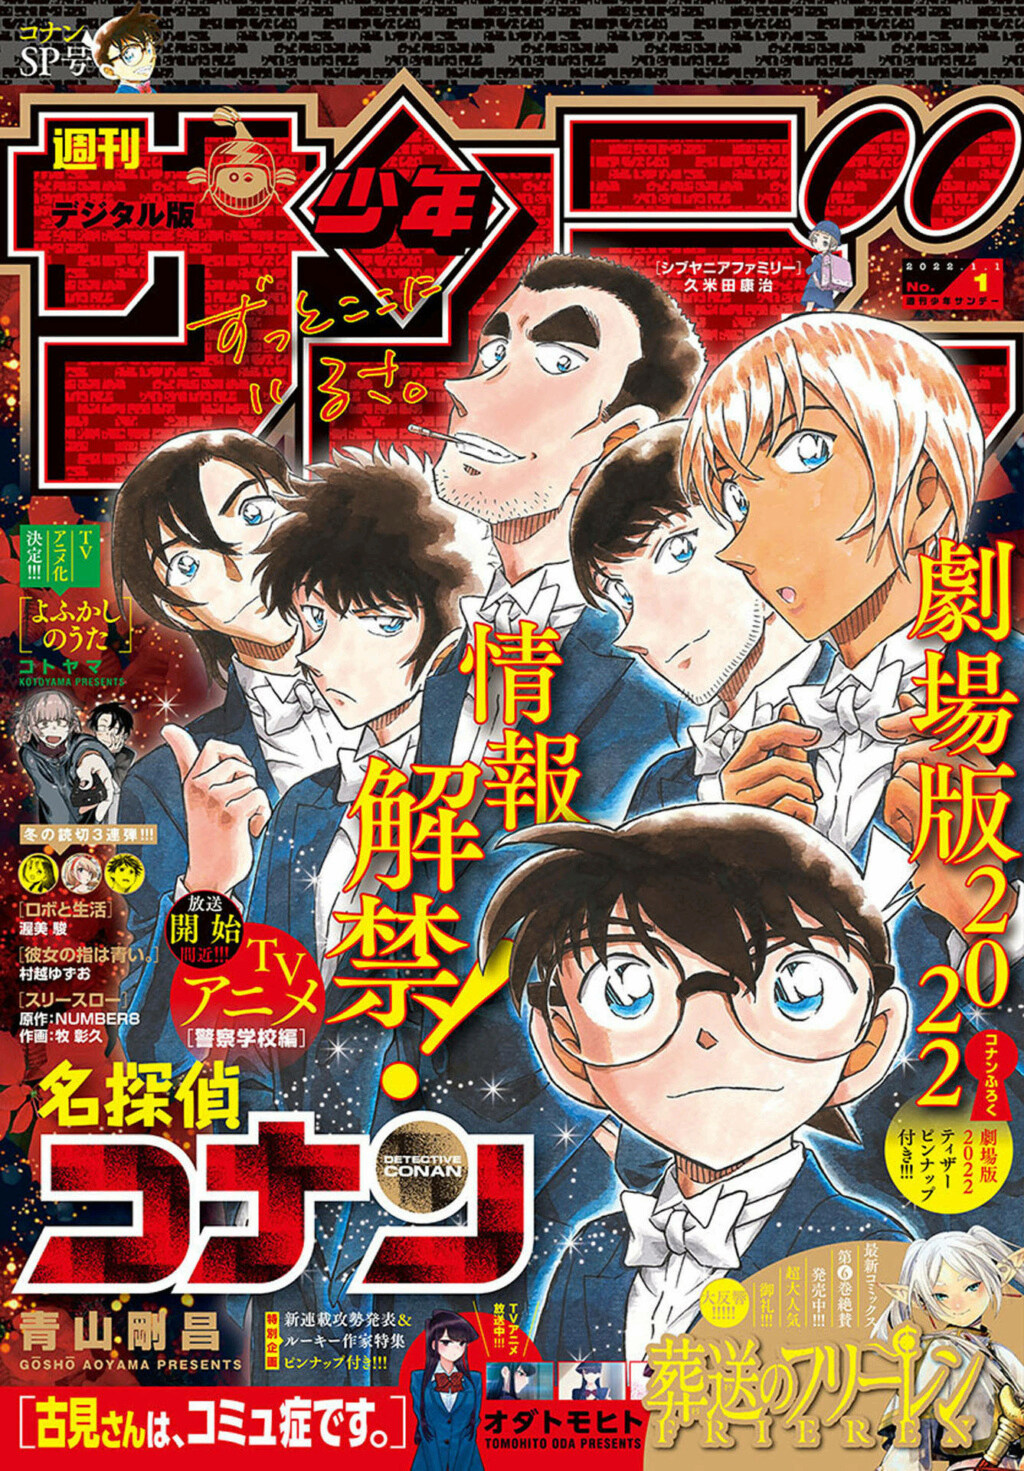 Les couvertures "Détective Conan" et "Magic Kaito" du Weekly Shōnen Sunday et du Shōnen Sunday Super 00118